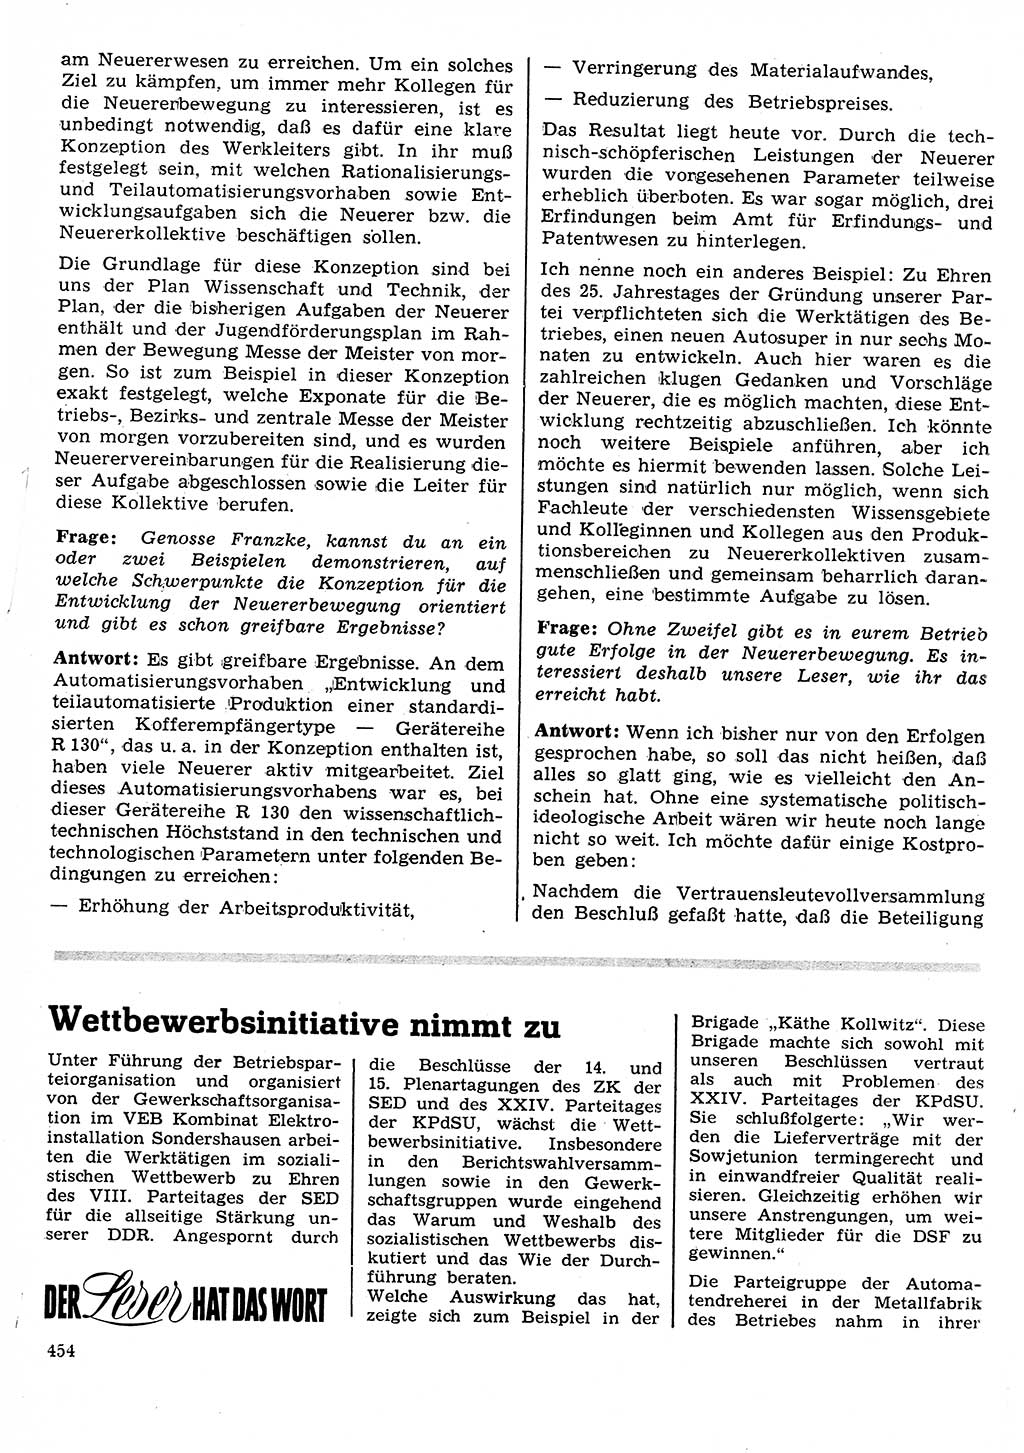 Neuer Weg (NW), Organ des Zentralkomitees (ZK) der SED (Sozialistische Einheitspartei Deutschlands) für Fragen des Parteilebens, 26. Jahrgang [Deutsche Demokratische Republik (DDR)] 1971, Seite 454 (NW ZK SED DDR 1971, S. 454)